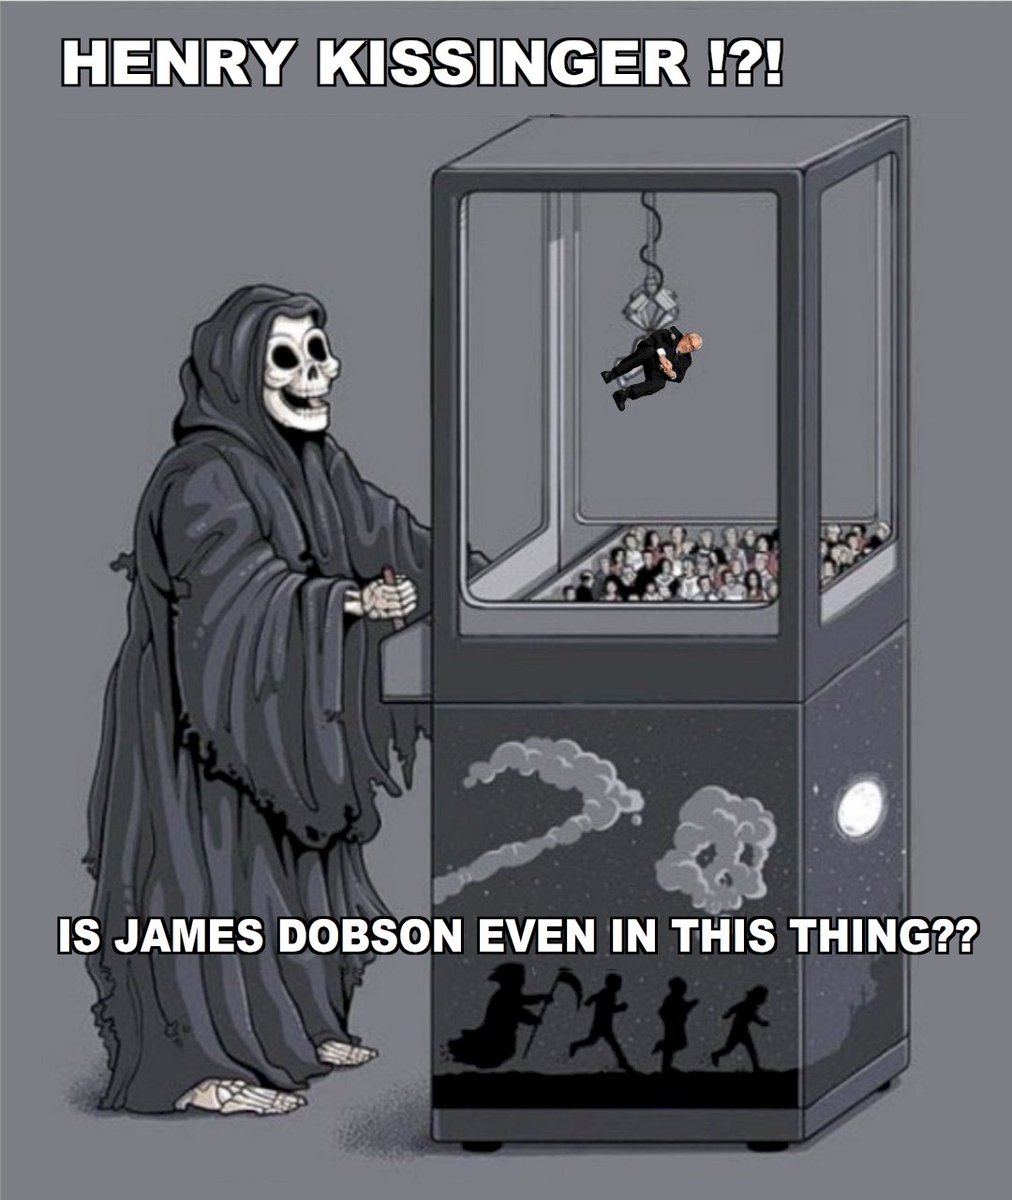 #JamesDobson
#HenryKissinger